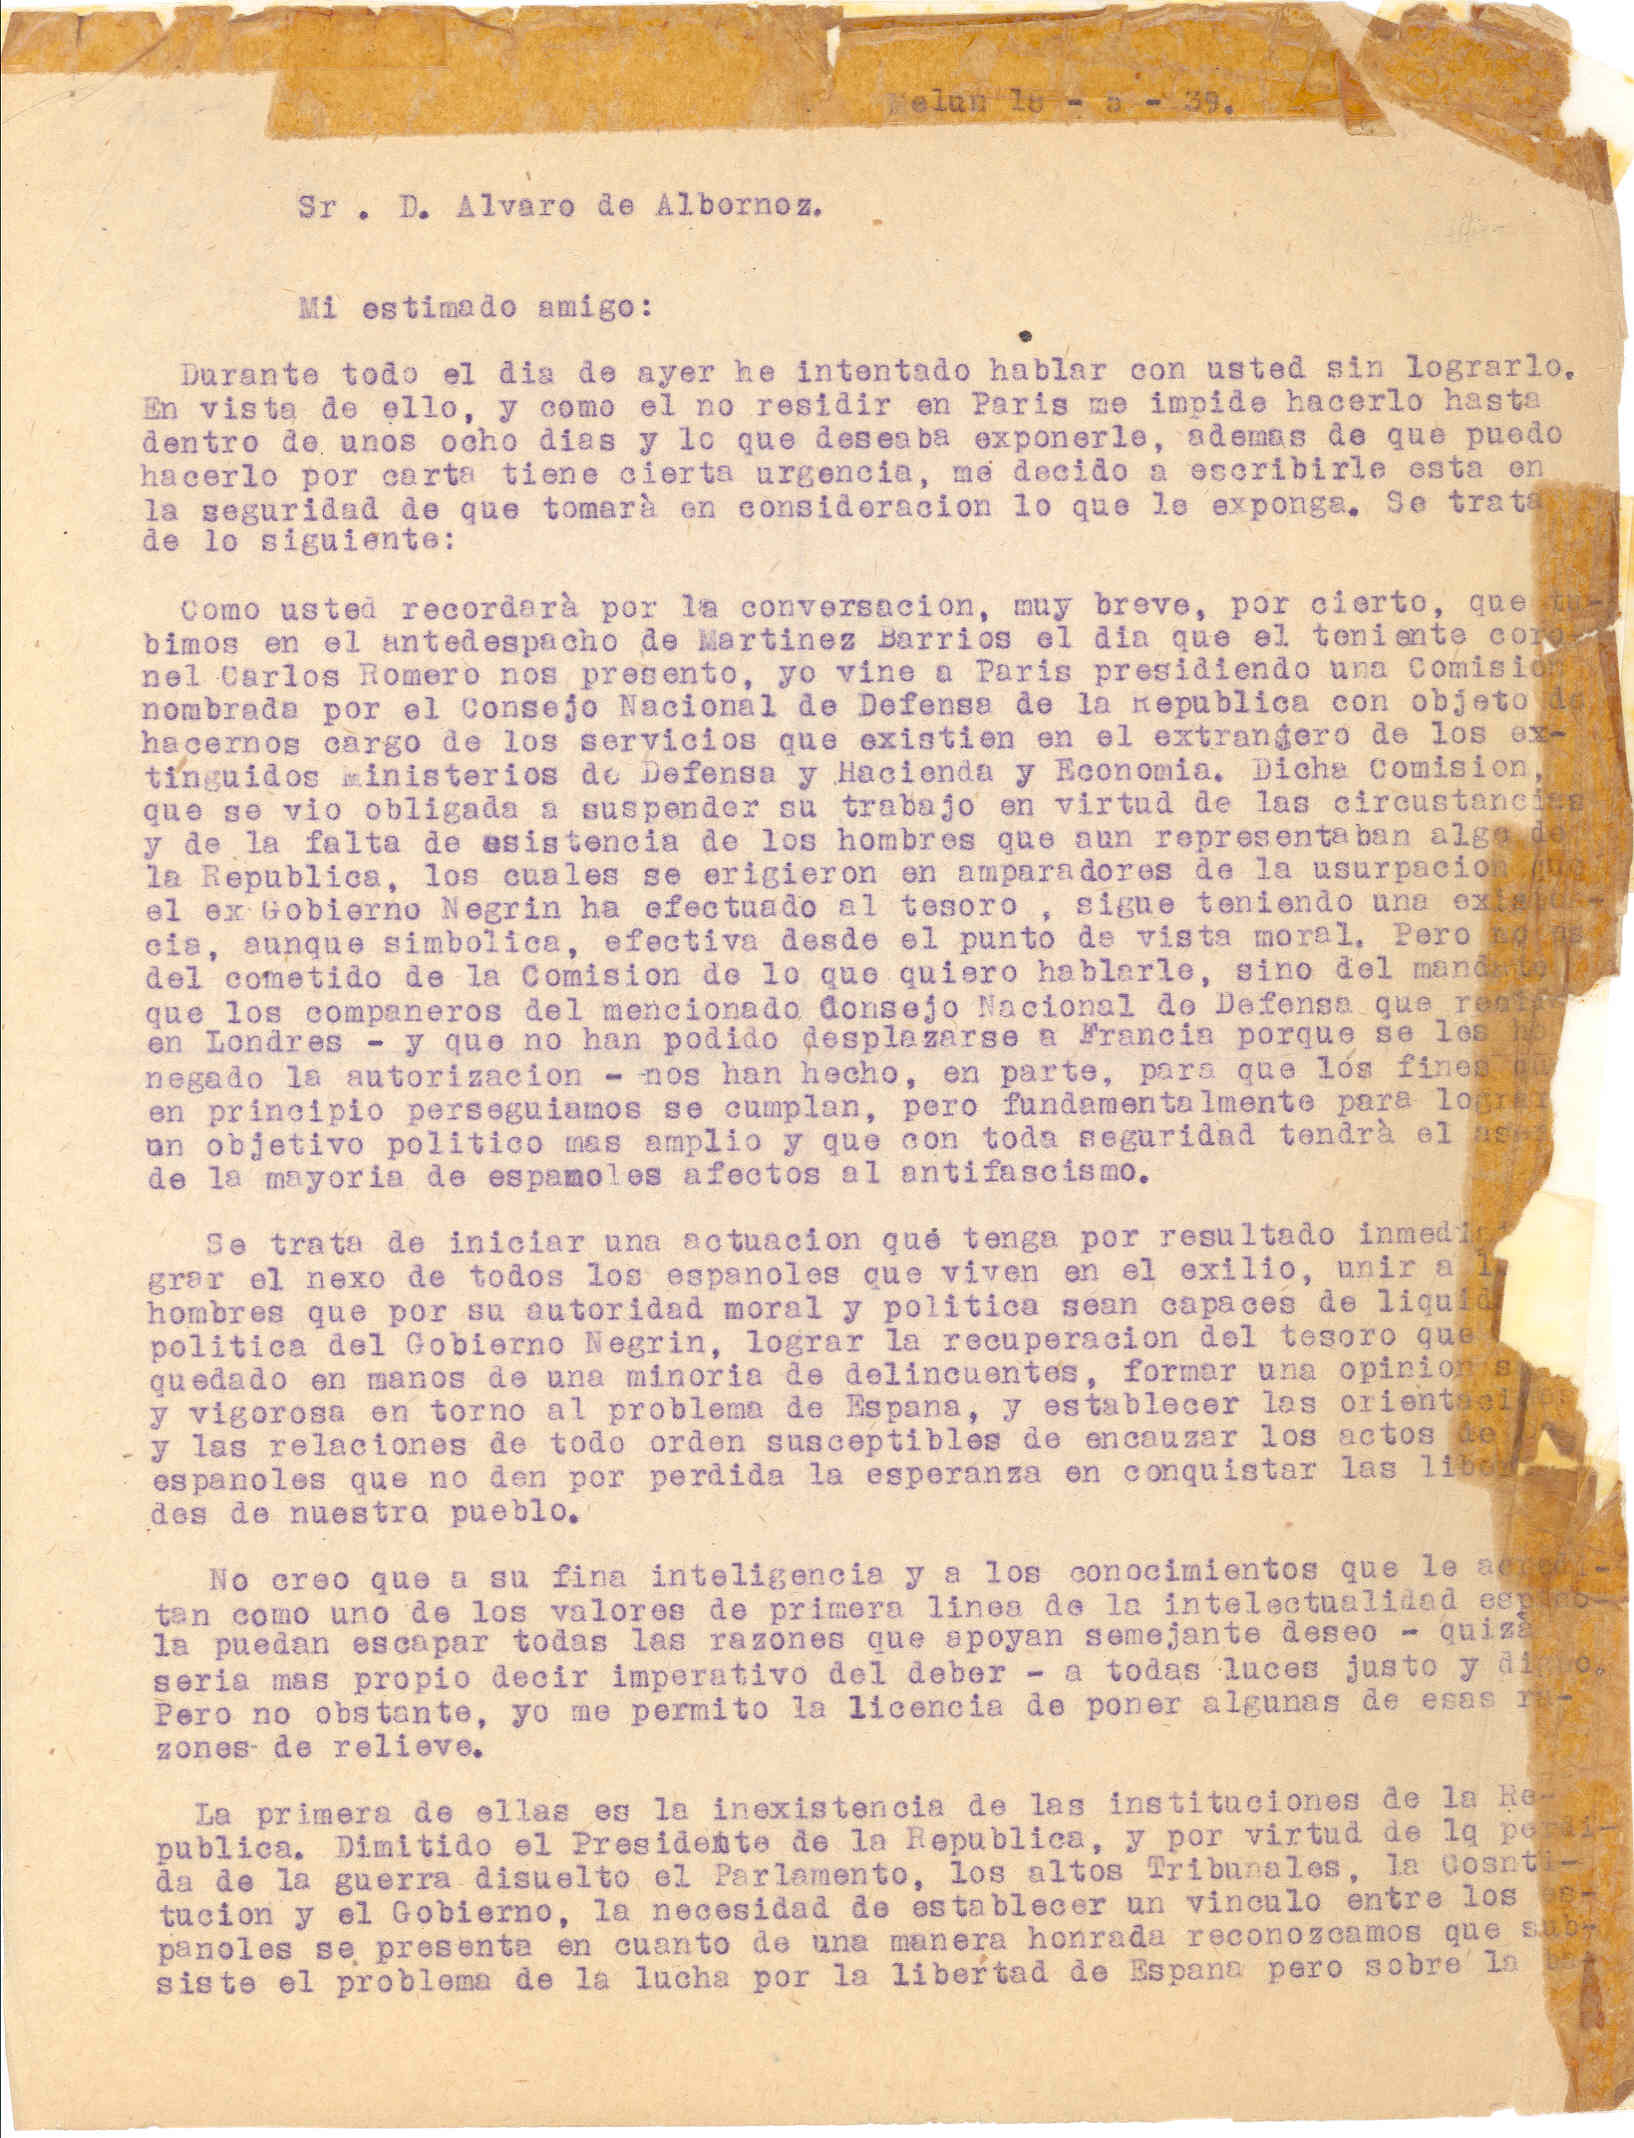 Carta a D. Álvaro de Albornoz proponiéndole una actuación para nexar a todos los españoles exiliados y terminar con el Gobierno Negrín.